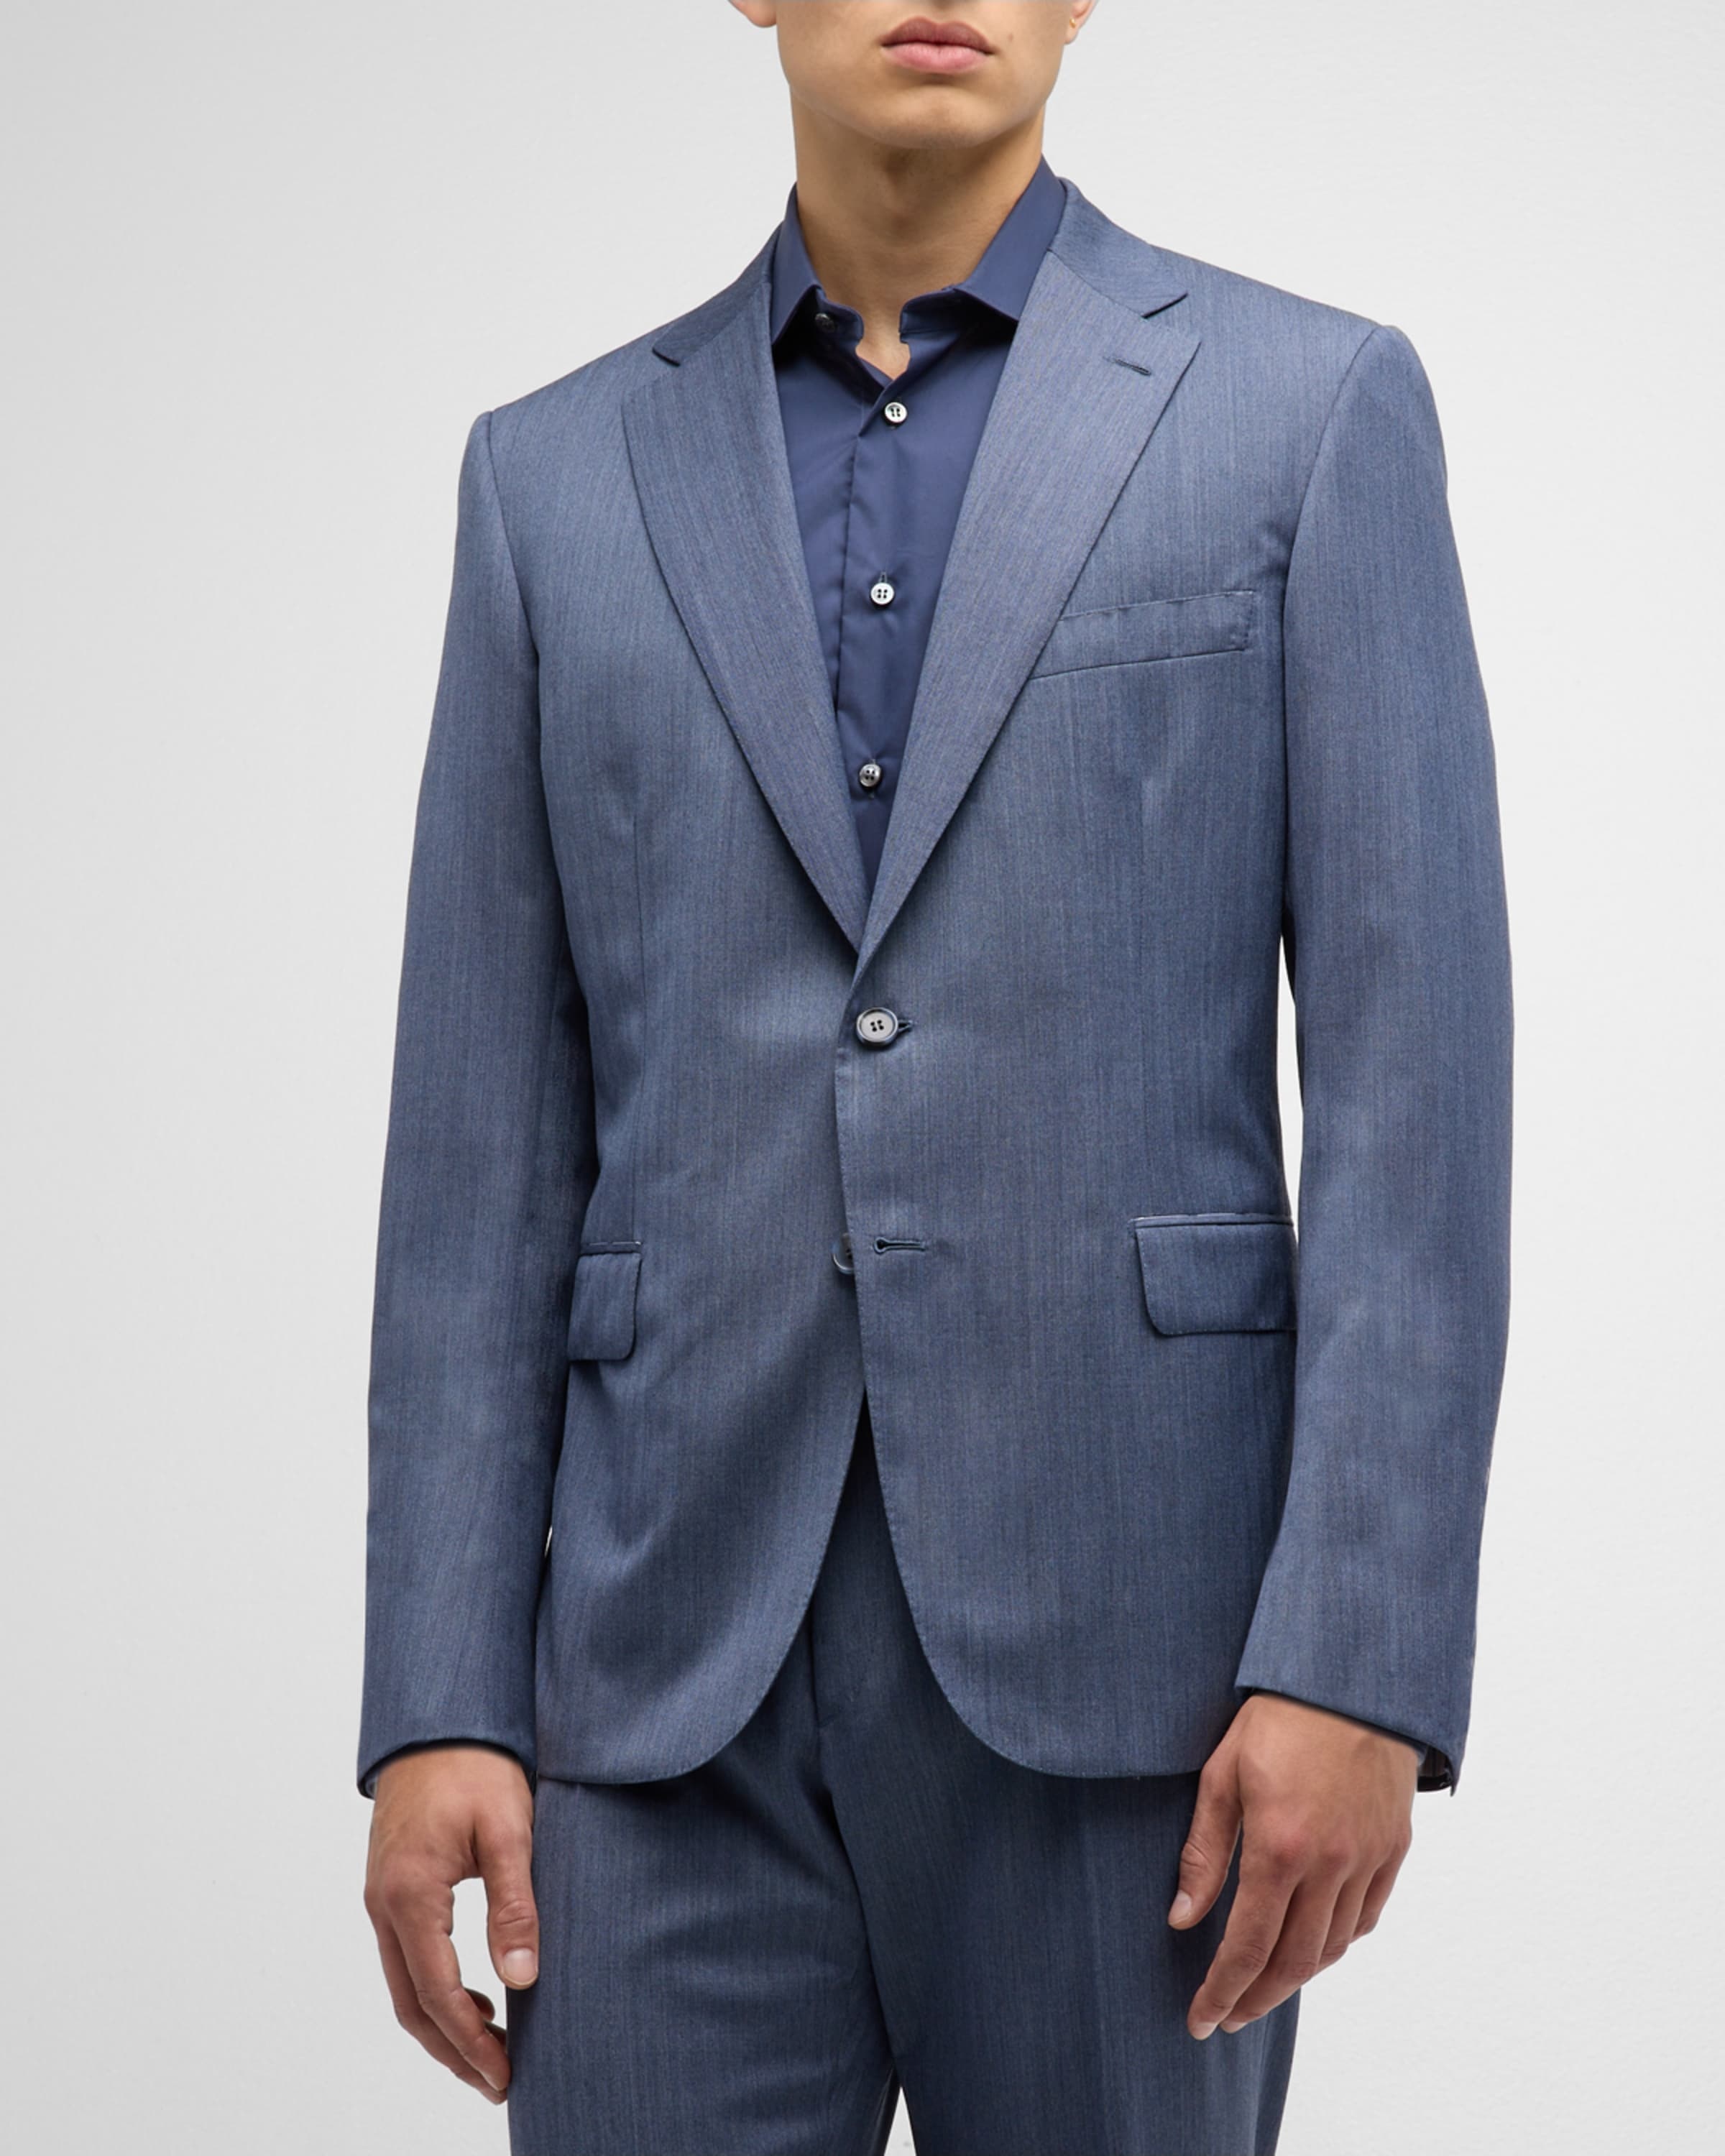 Men's Chevron Wool Suit - 3